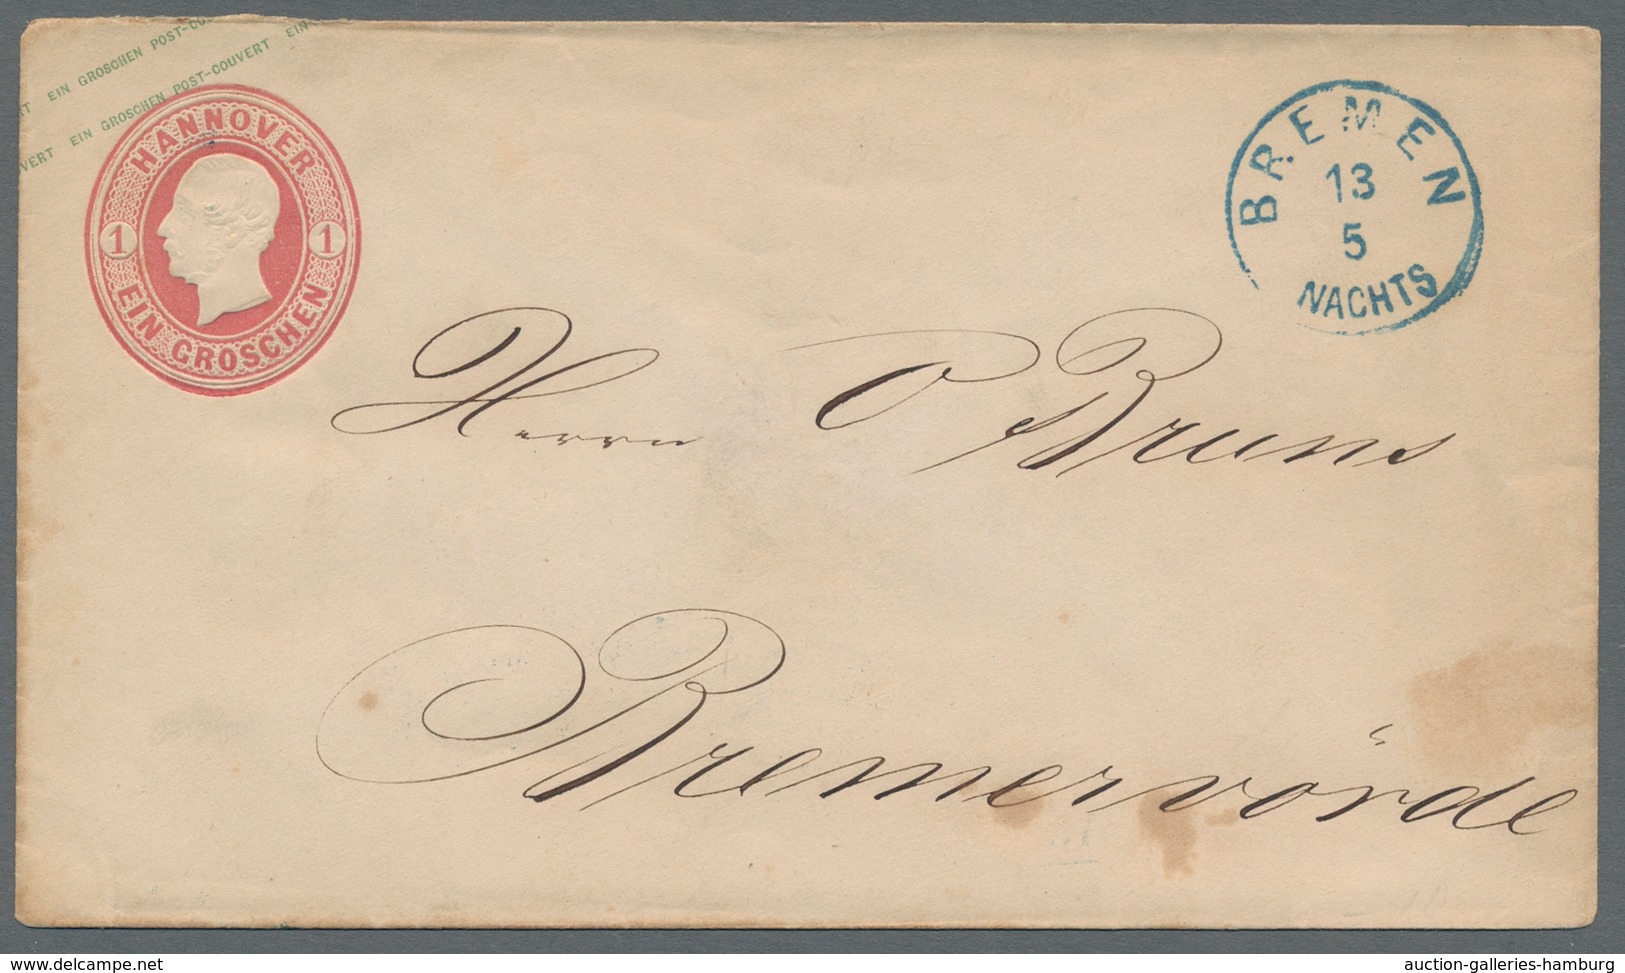 Hannover - Marken und Briefe: 1864, 15 Briefe und Ganzsachen, dabei dreimal Nachverwendung auf Preus